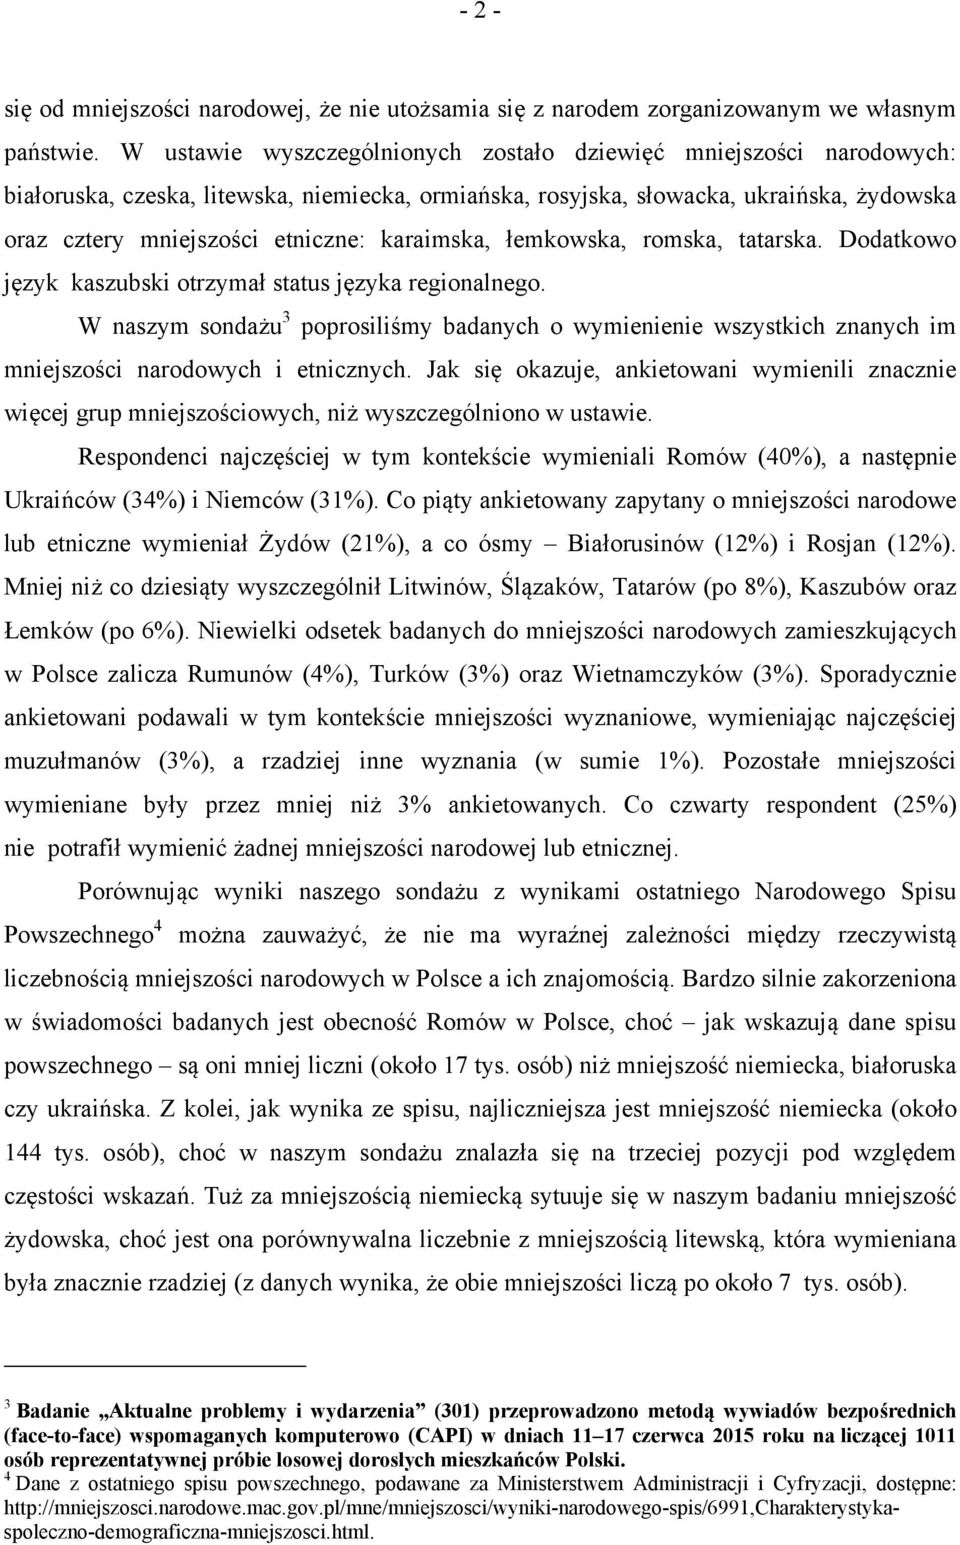 karaimska, łemkowska, romska, tatarska. Dodatkowo język kaszubski otrzymał status języka regionalnego.